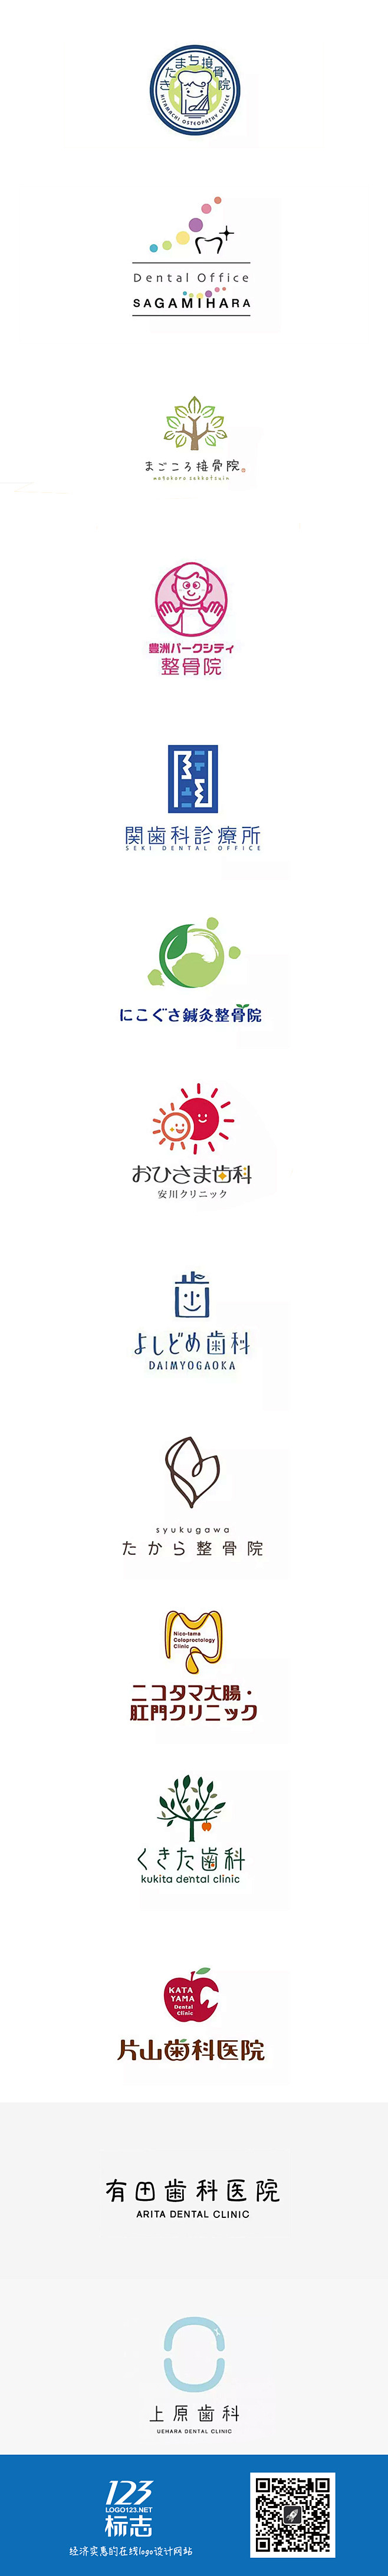 一组日系小清新风格医院元素logo设计集...